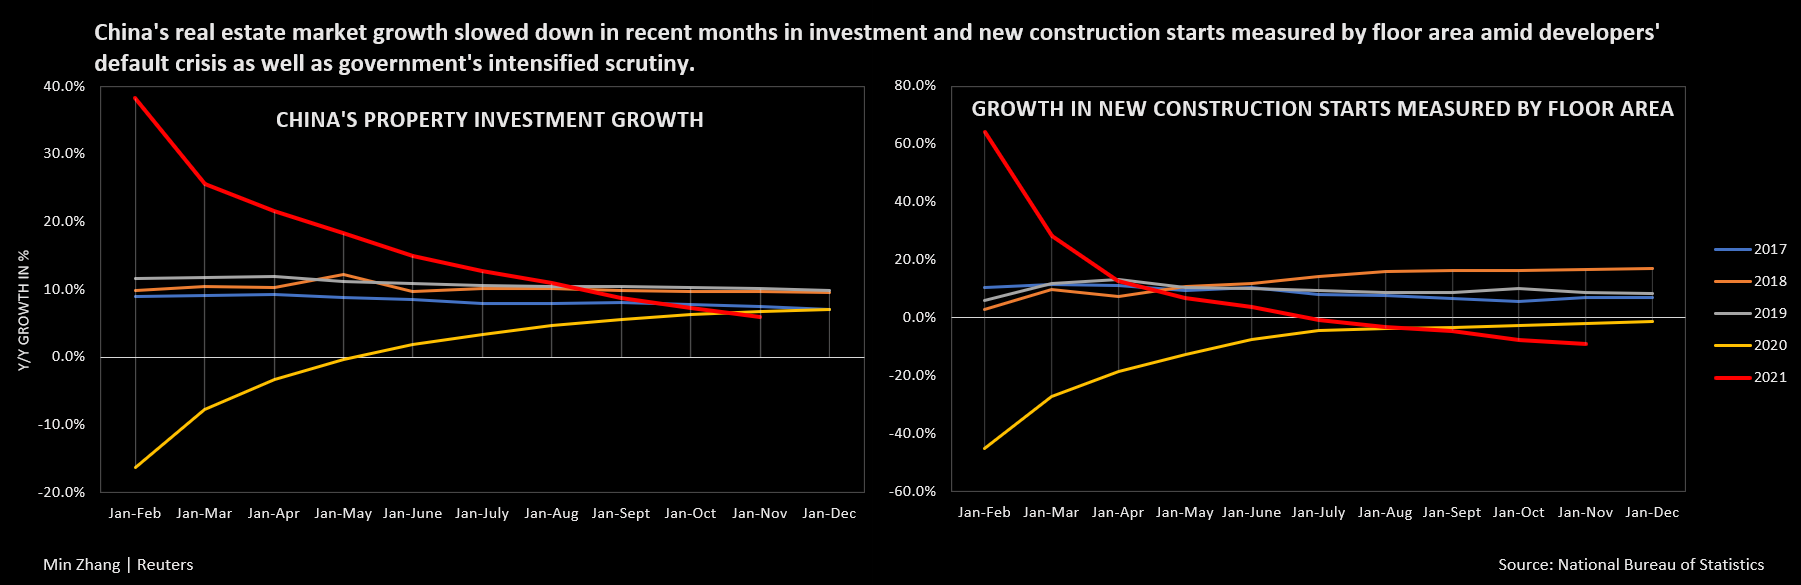 El crecimiento de la inversión inmobiliaria y de las nuevas construcciones de China, medido por superficie, ha caído en los últimos meses en medio de la crisis de incumplimiento de los desarrolladores y los controles gubernamentales.